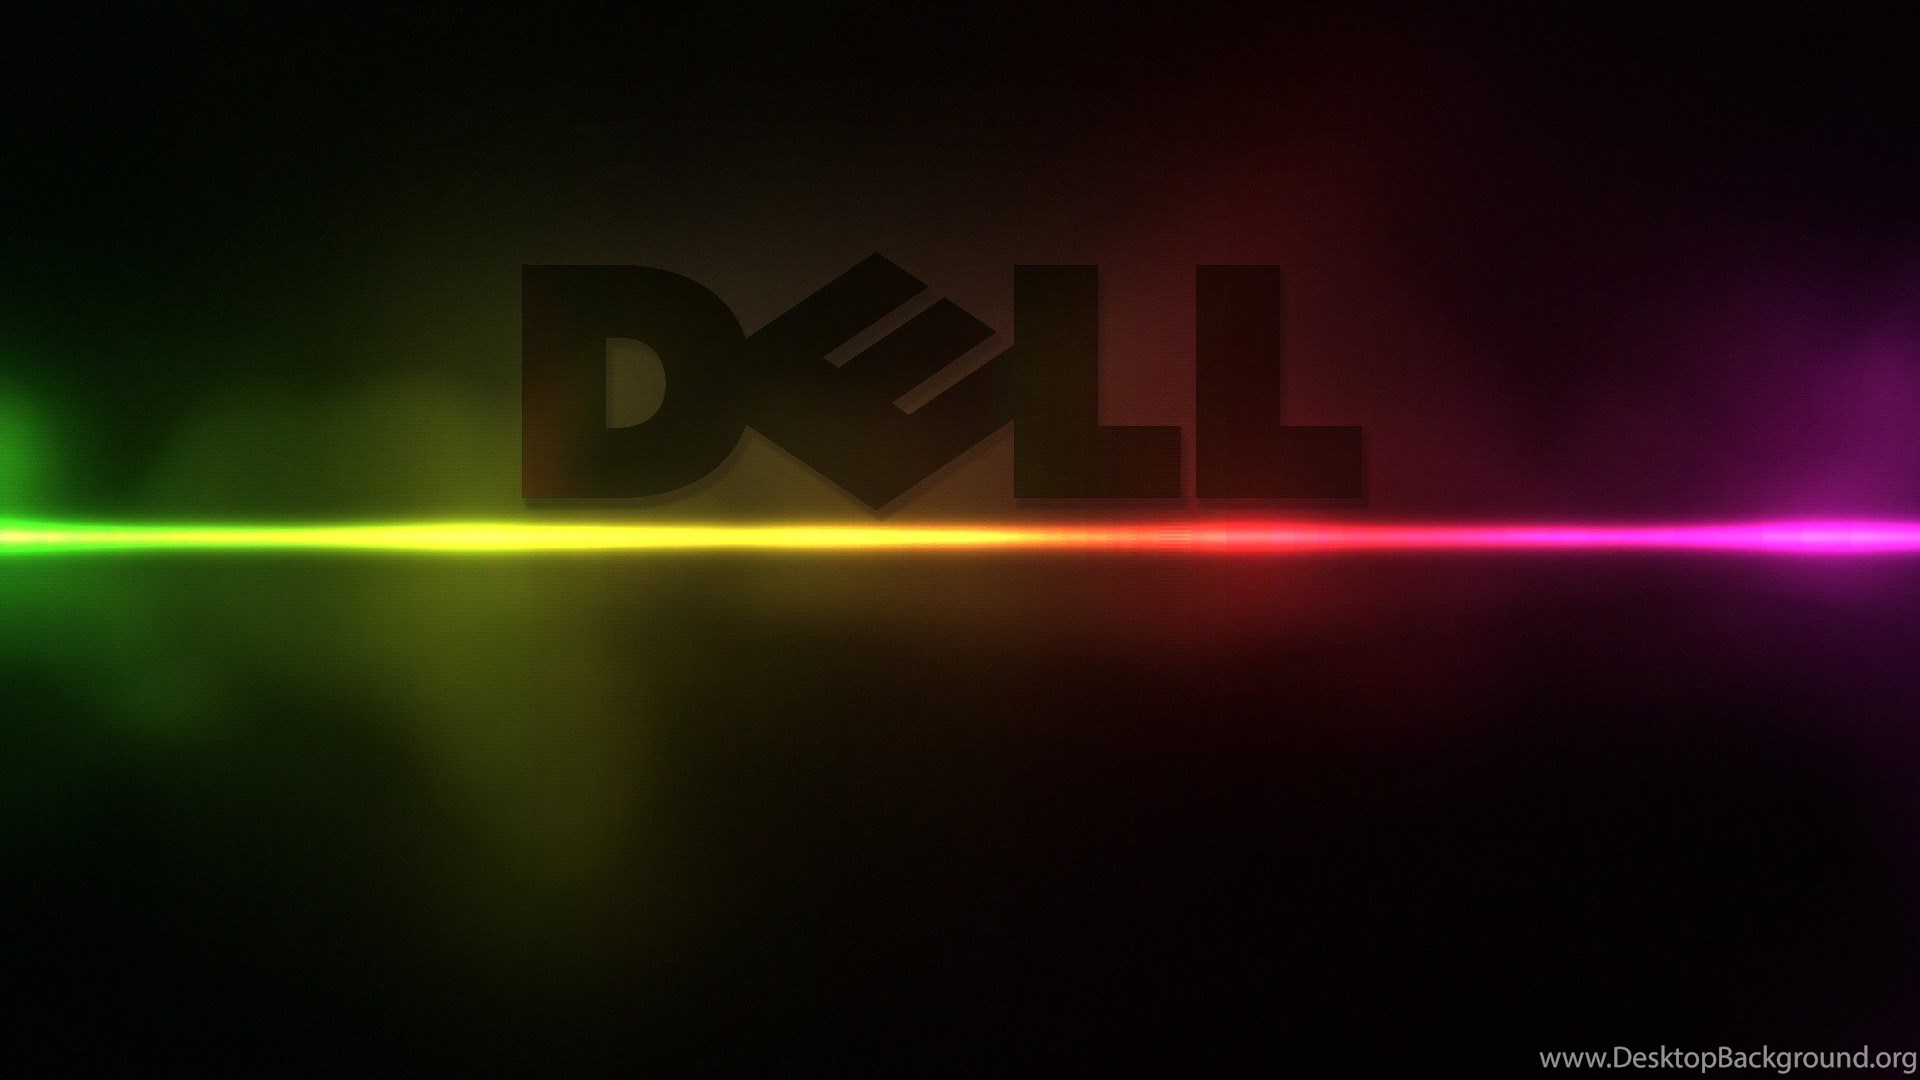 Cool Dell Wallpapers For Desktop Desktop Background